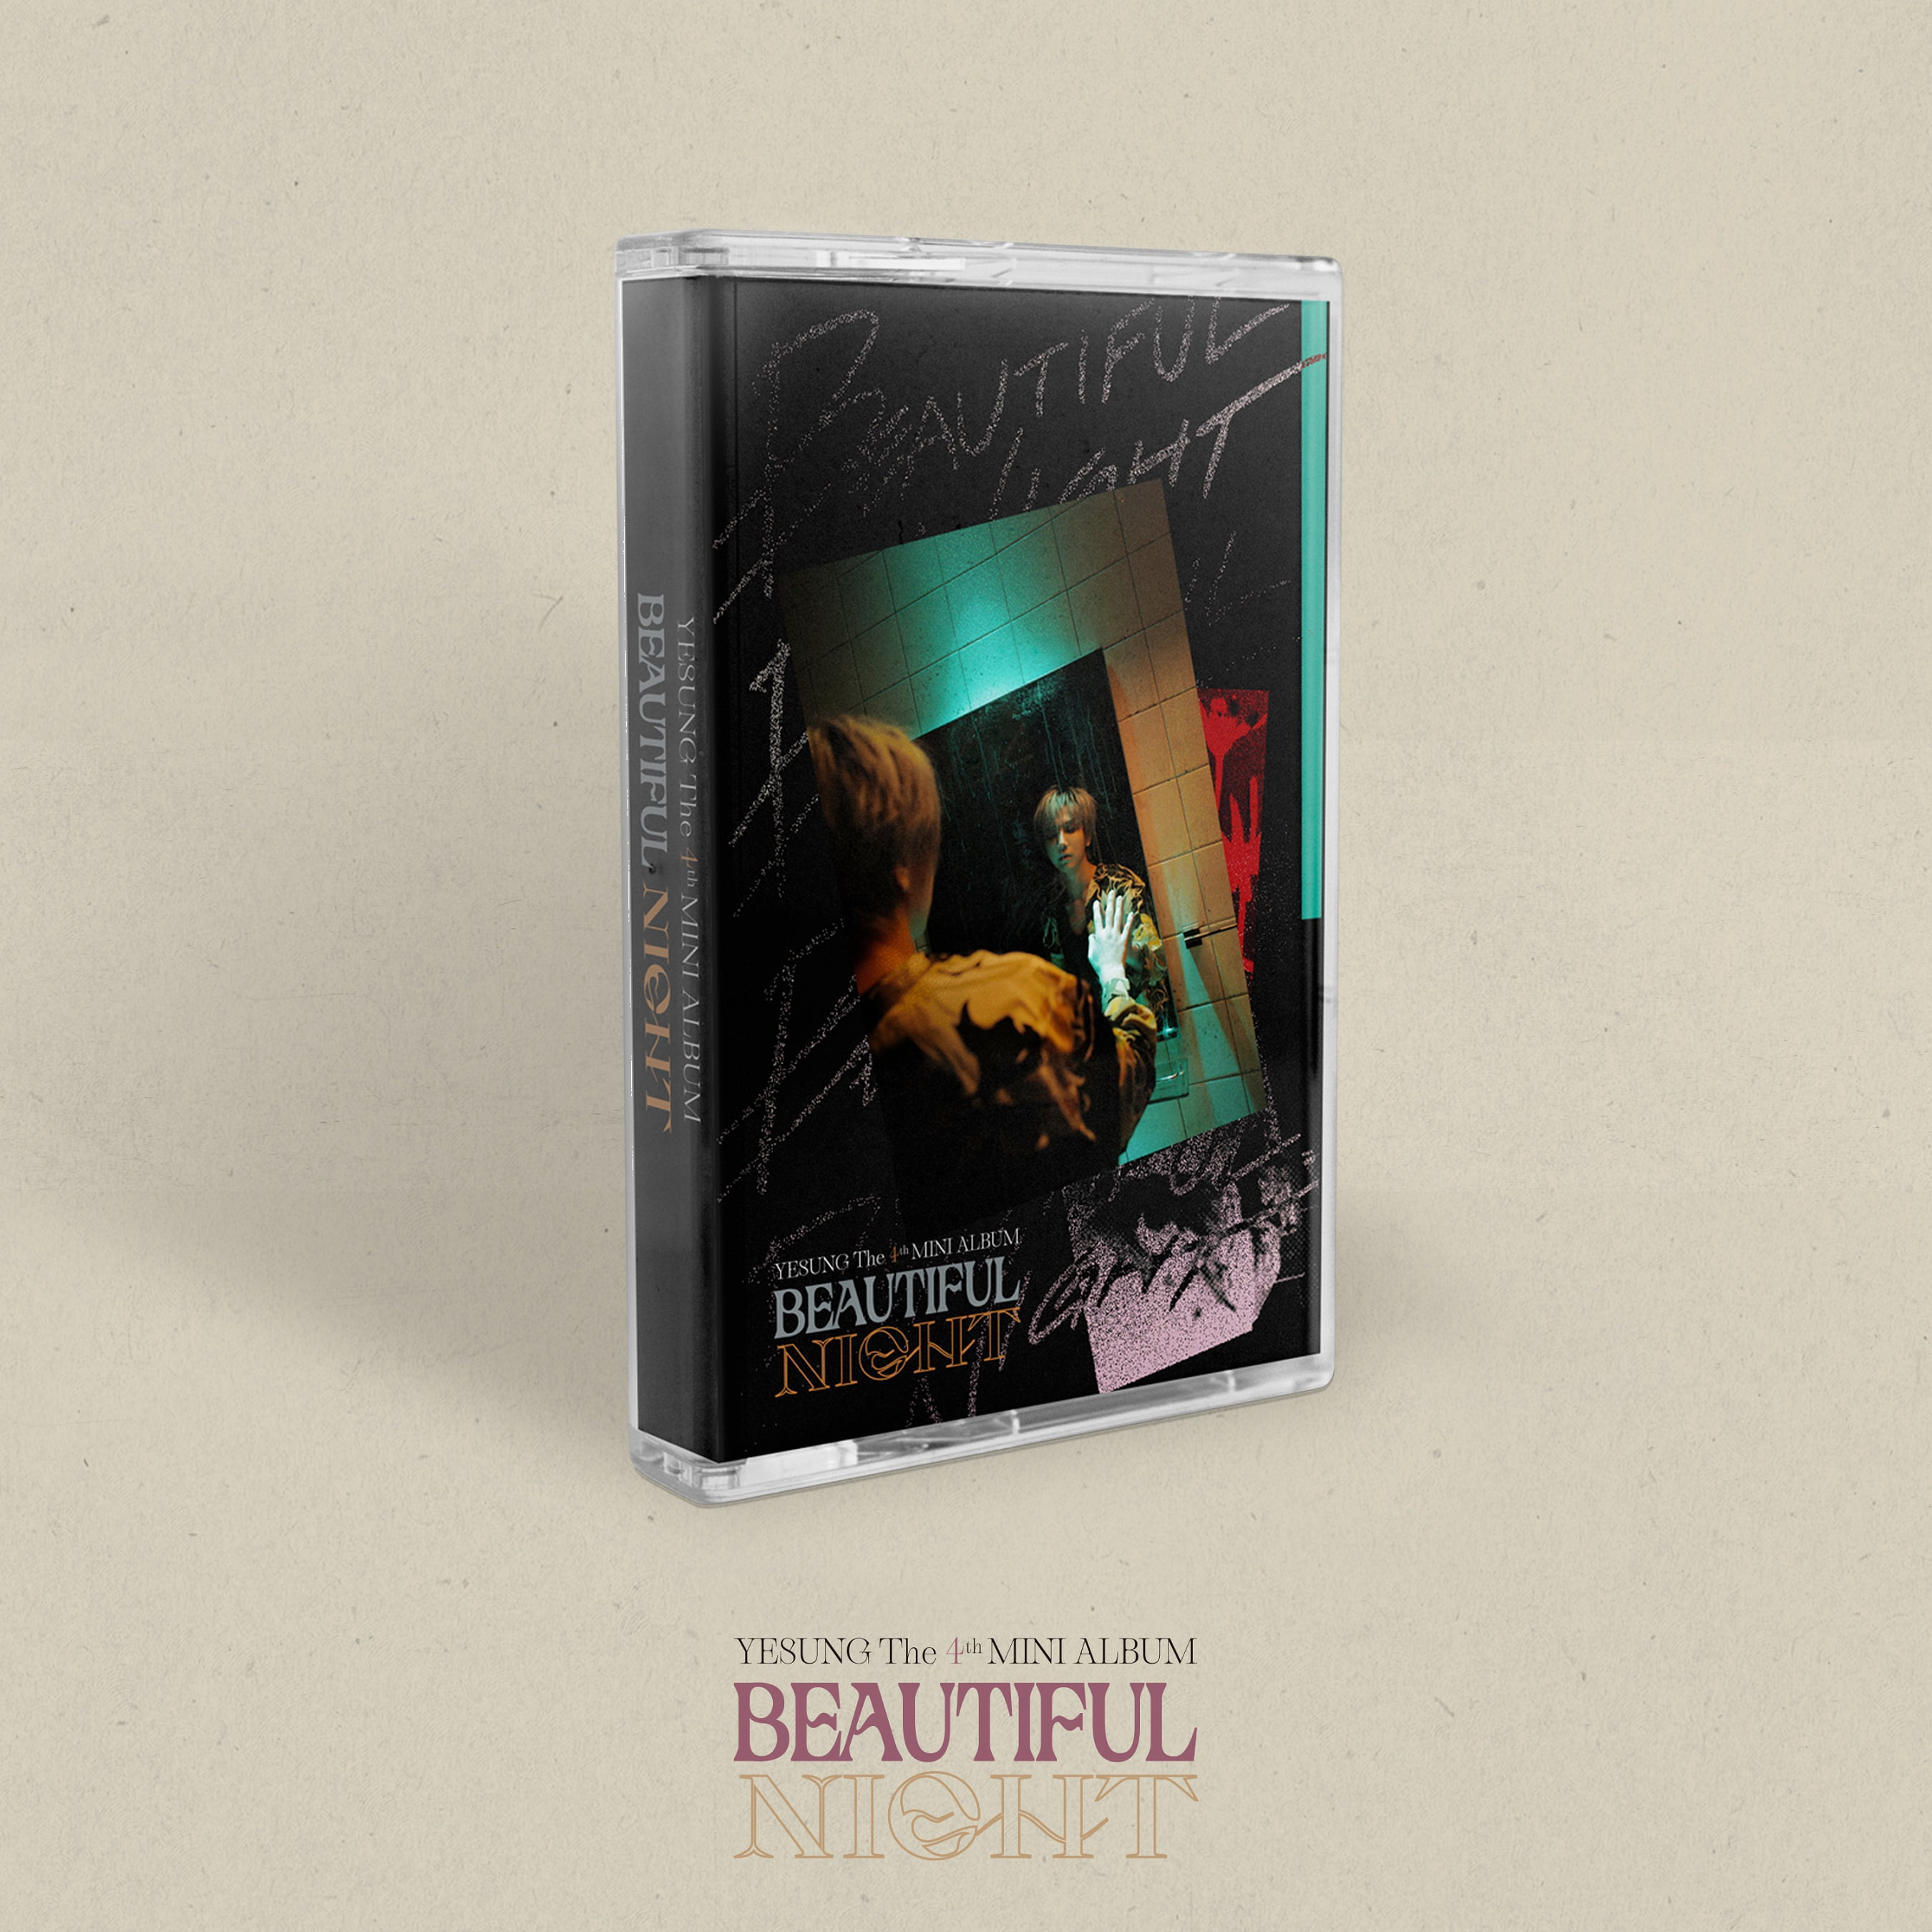 예성(YESUNG) - 미니 4집 [Beautiful Night] (Cassette Tape Ver.) (초회한정반)케이팝스토어(kpop store)